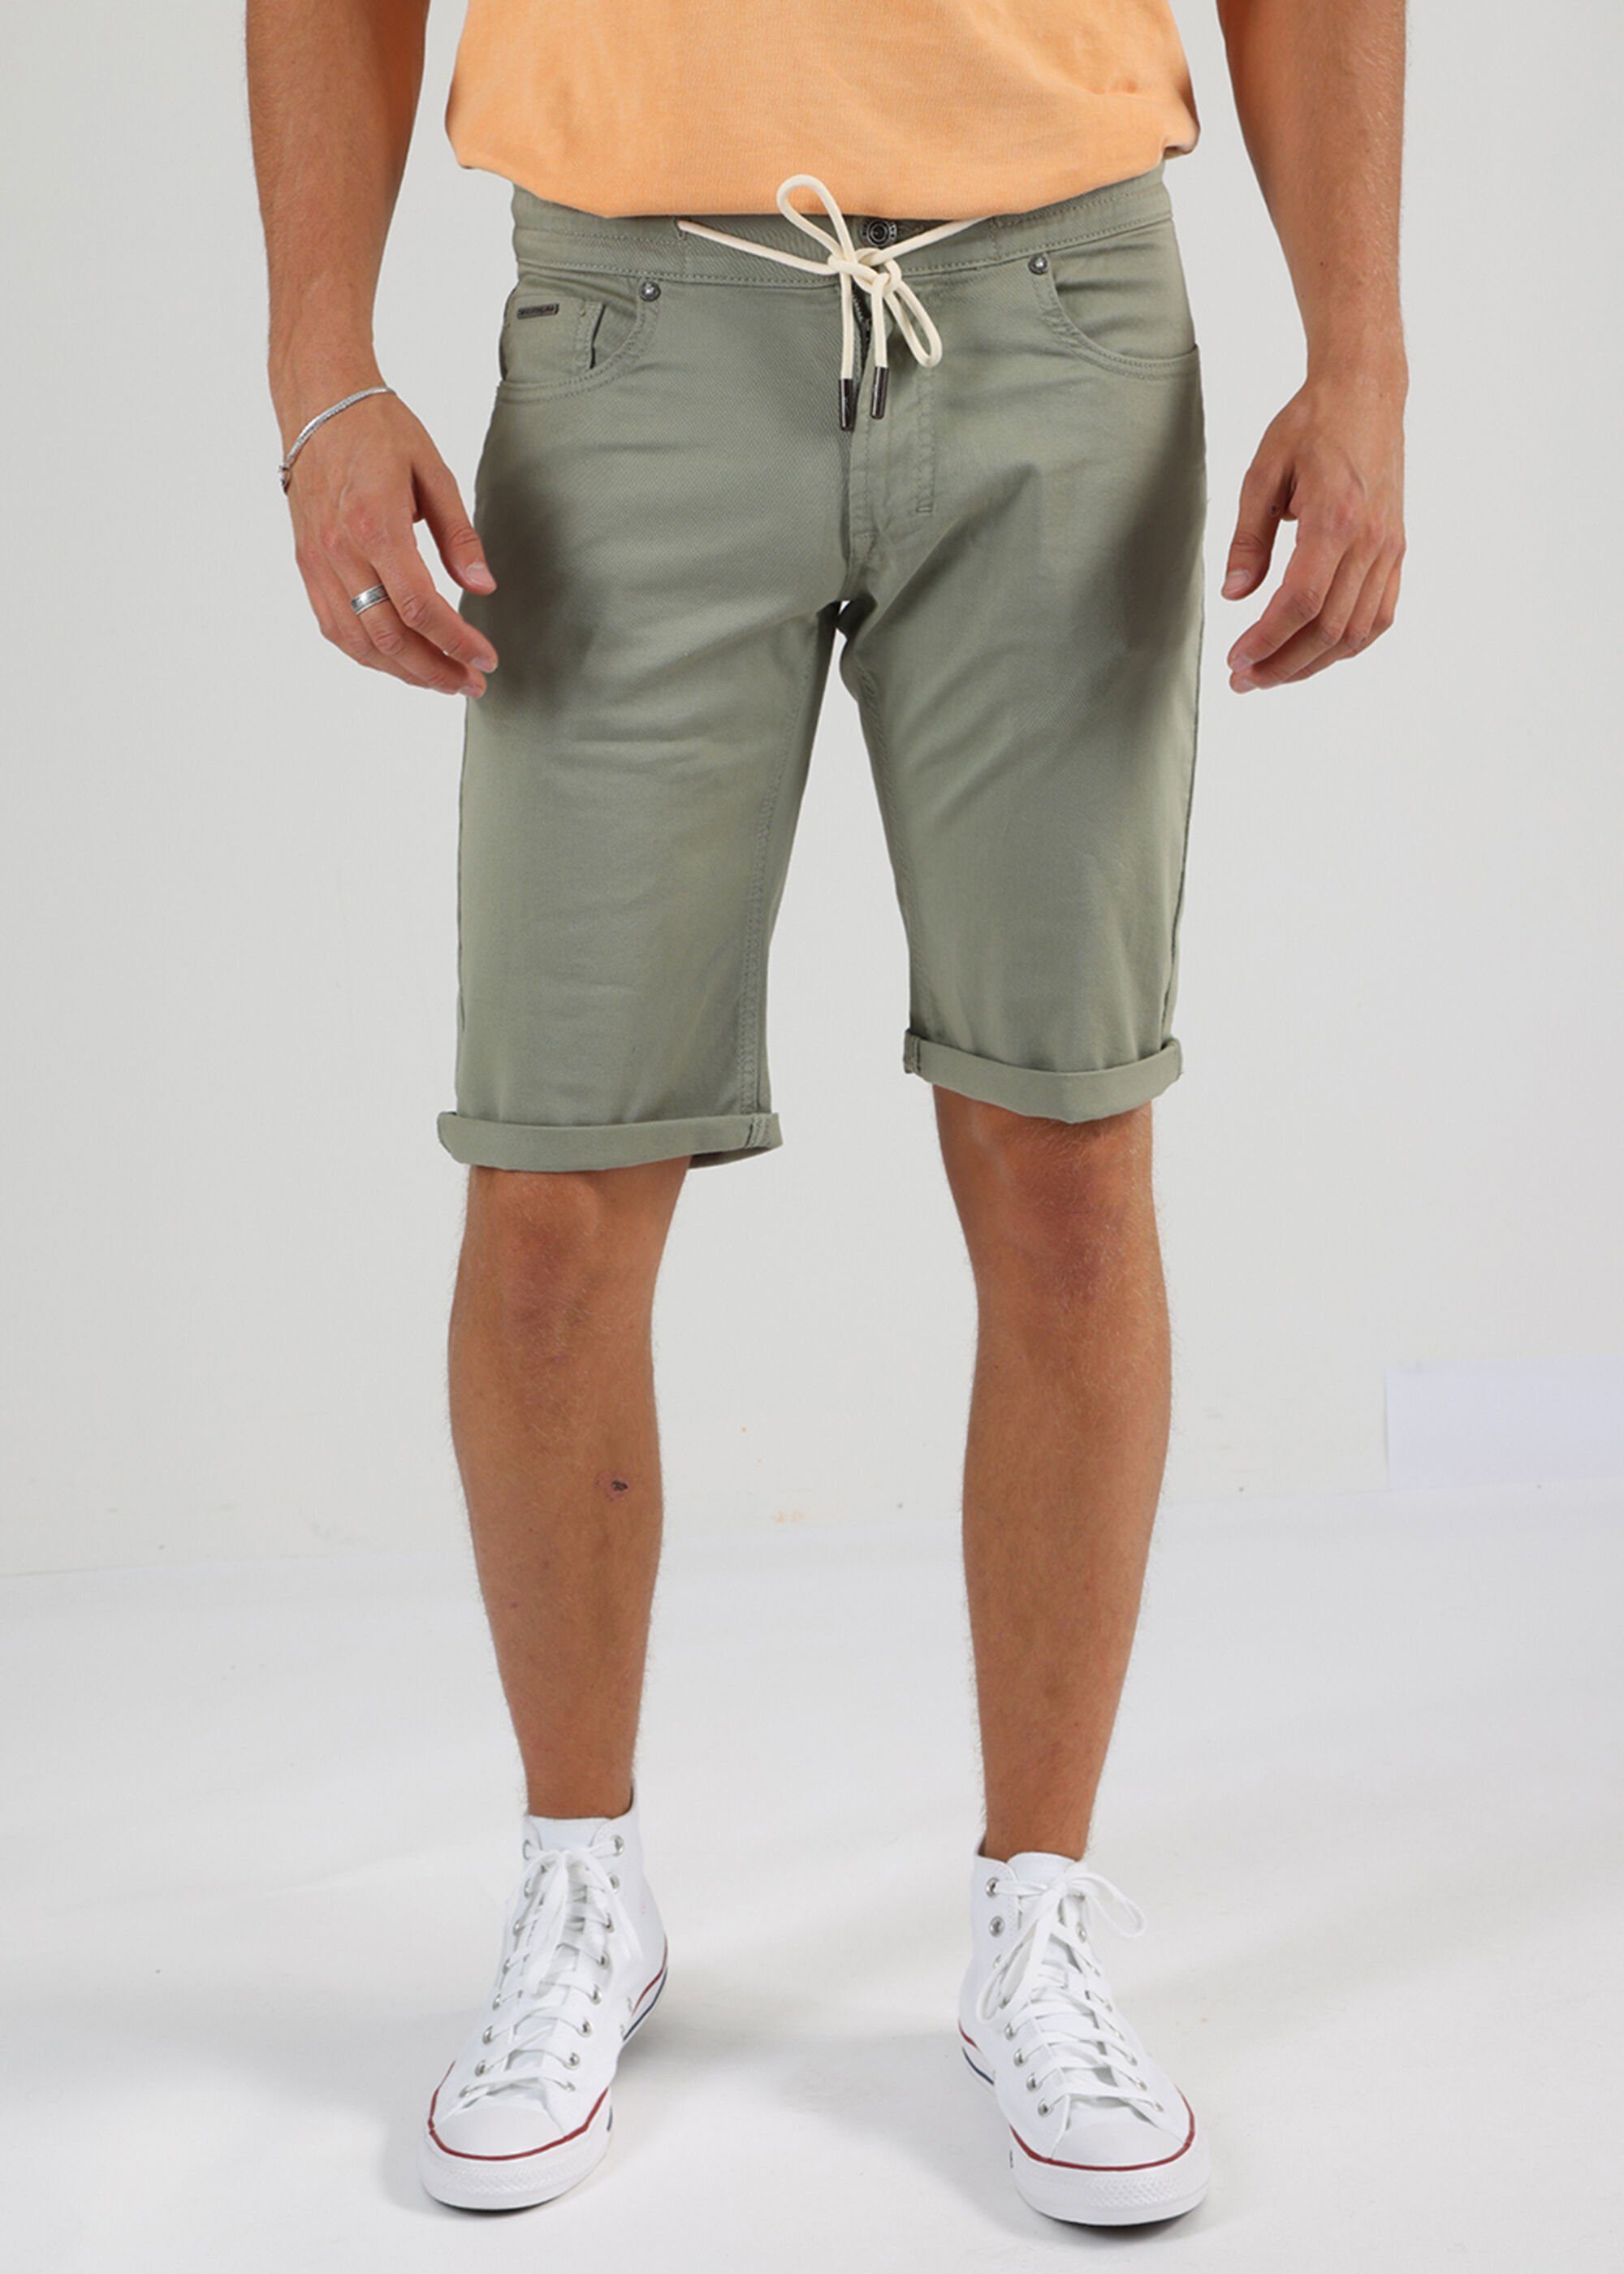 Pocket Style of 5 Shorts Denim Thomas Shorts Olive Miracle im